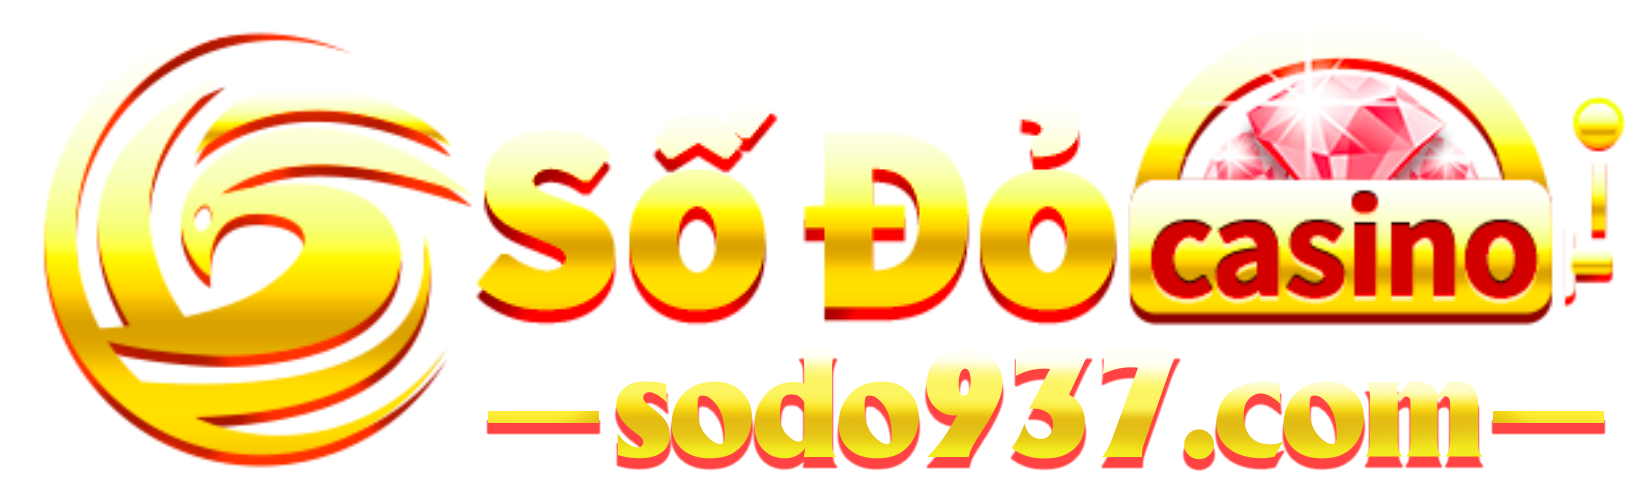 sodo937.com